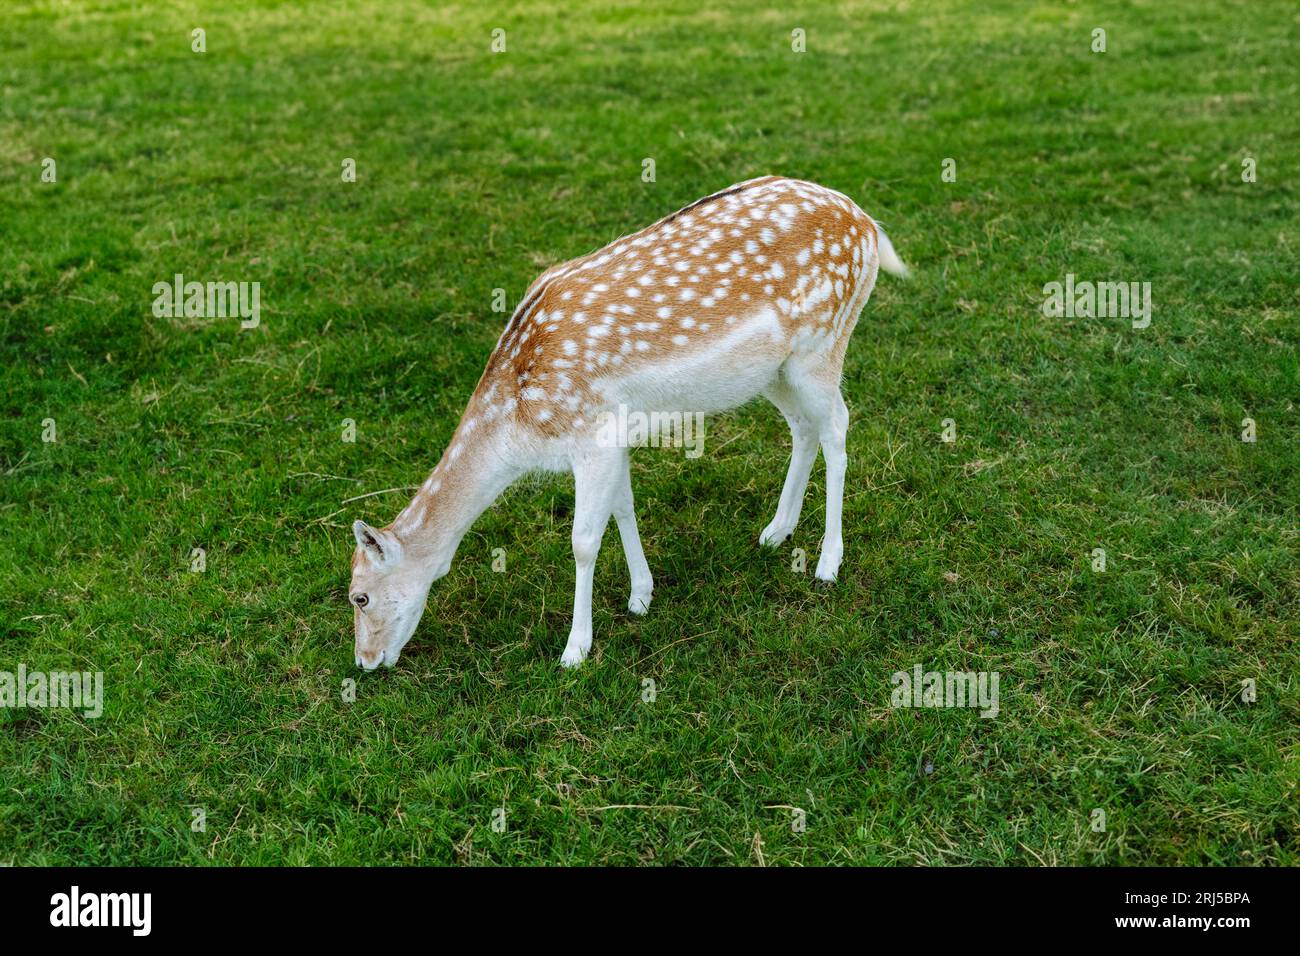 Young female fallow deer pinching grass. Stock Photo